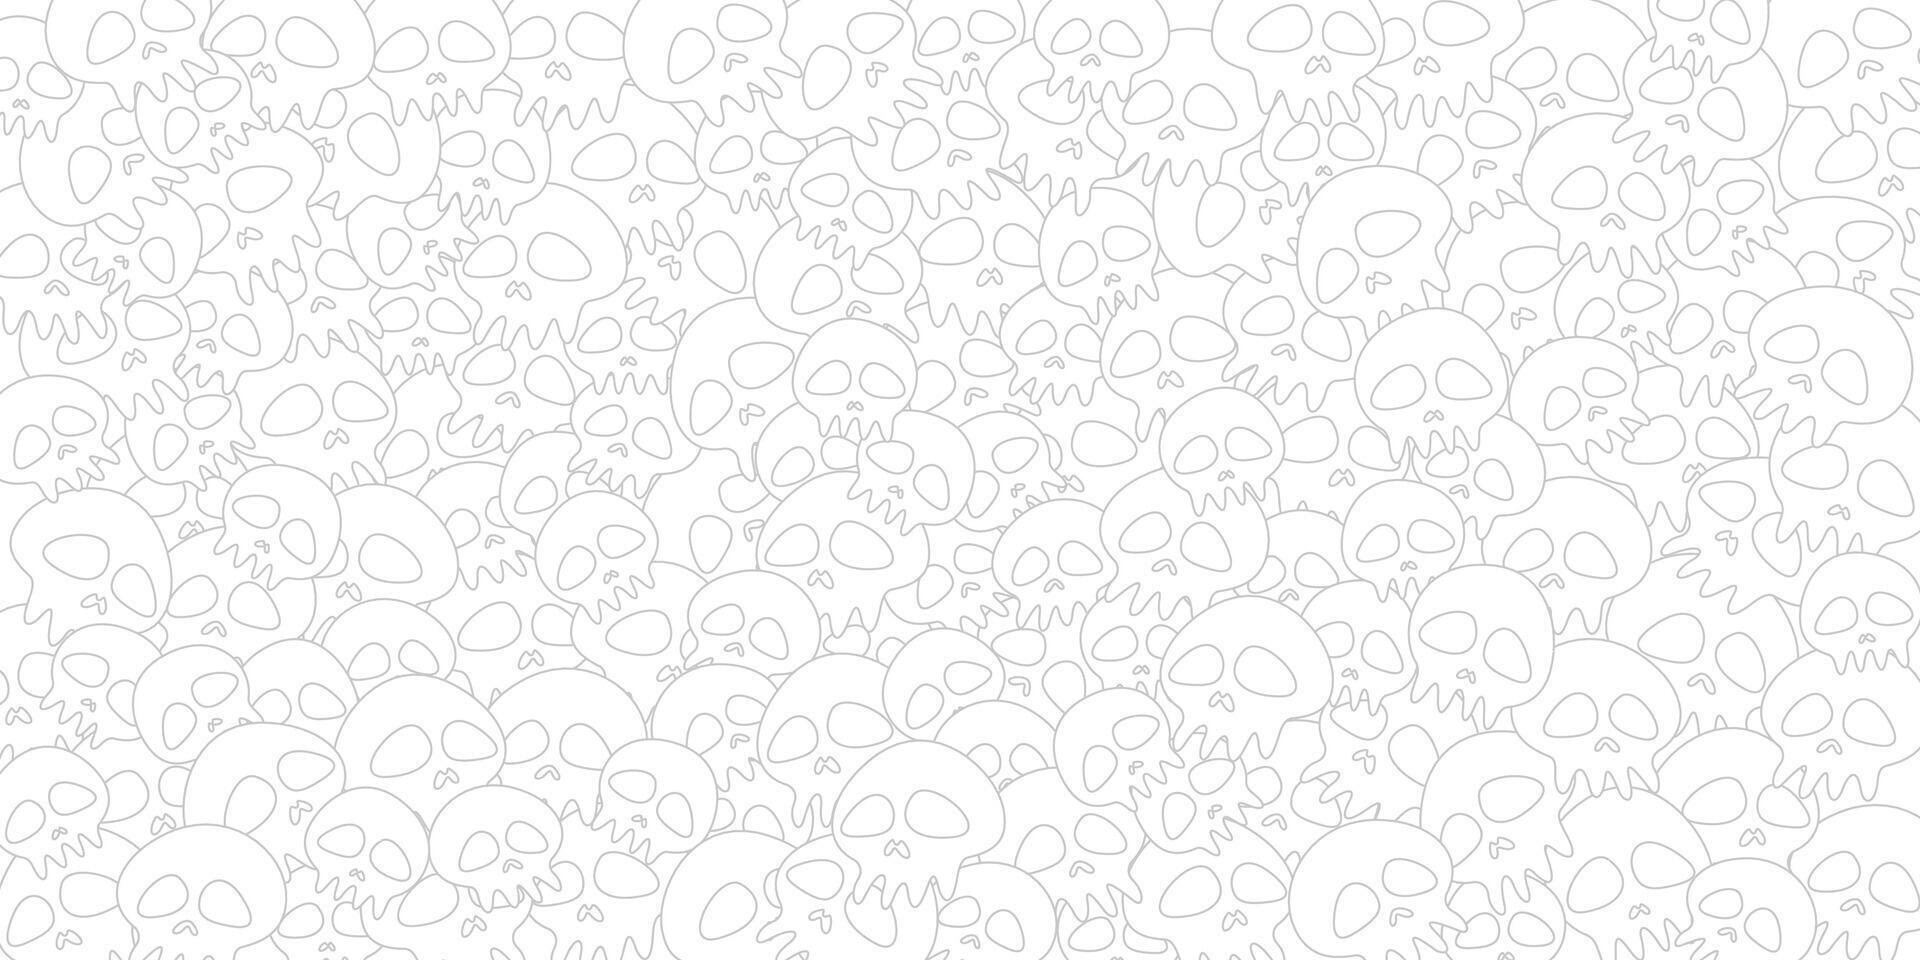 grau und Weiß Gliederung von verschiedene komisch Schädel Muster kindisch Stil Hintergrund Illustration. vektor